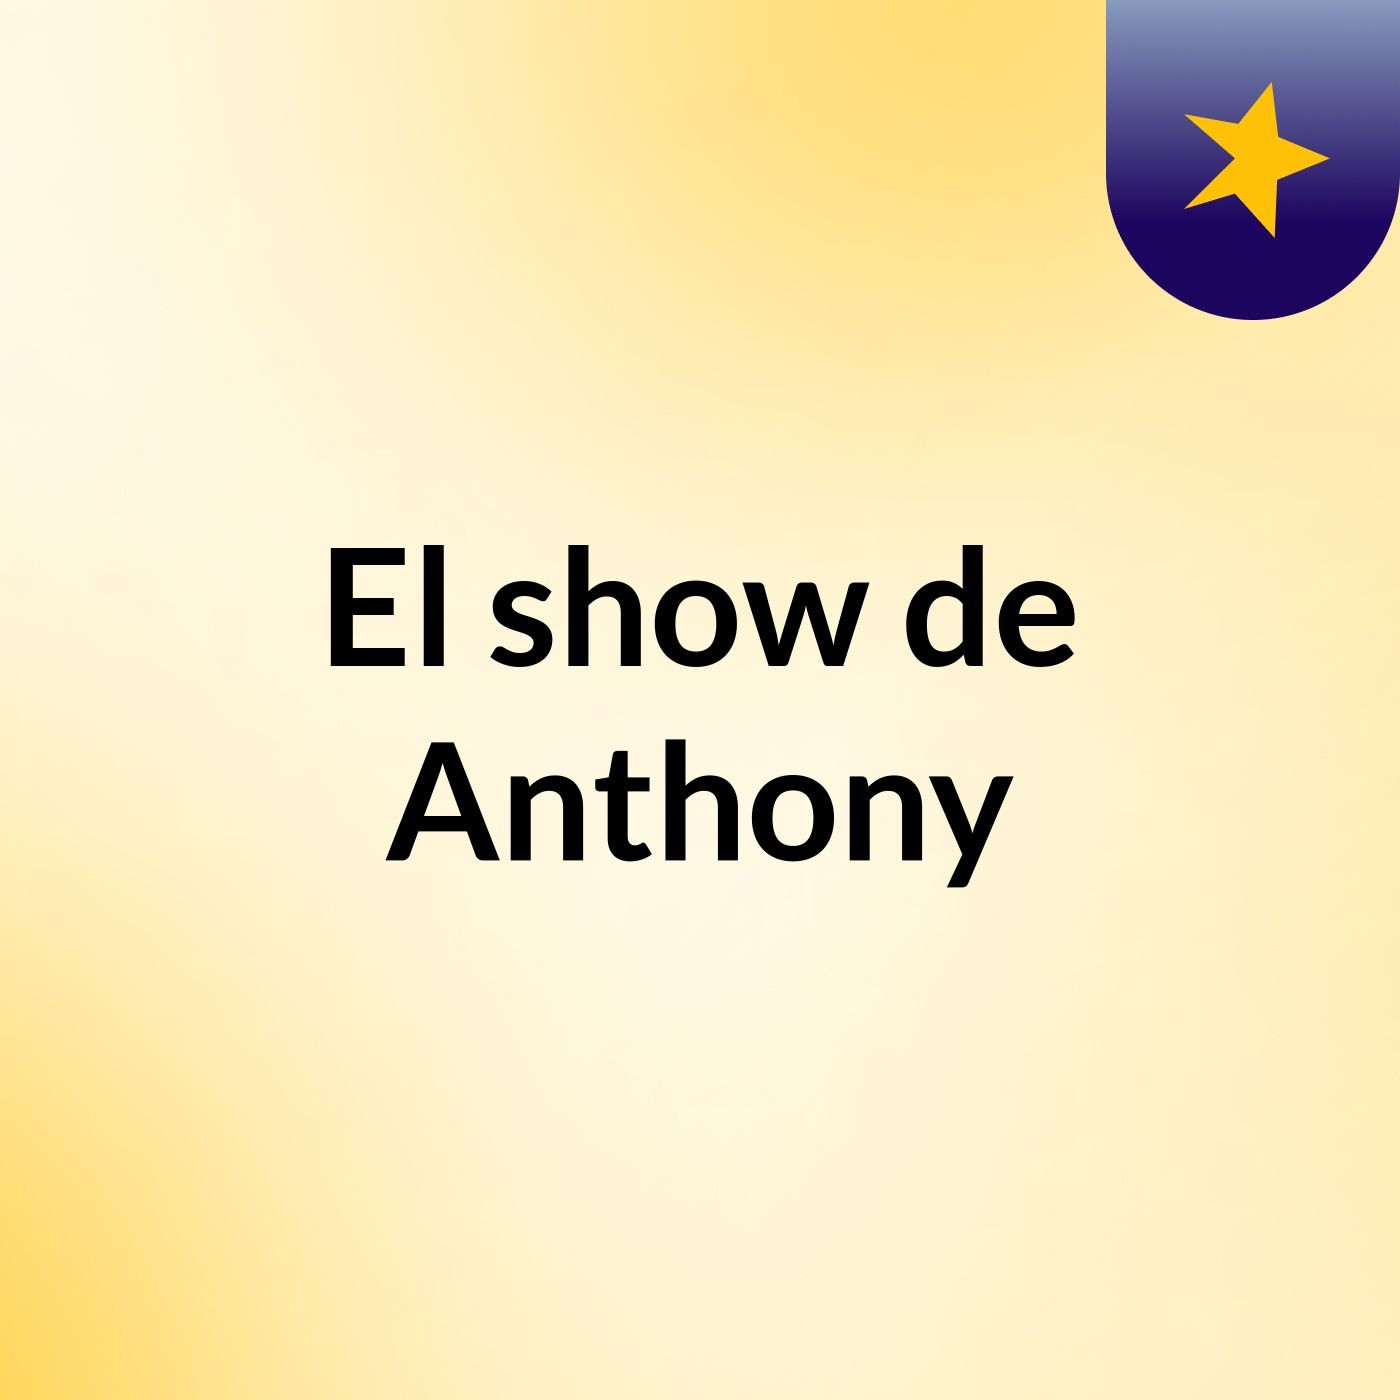 El show de Anthony